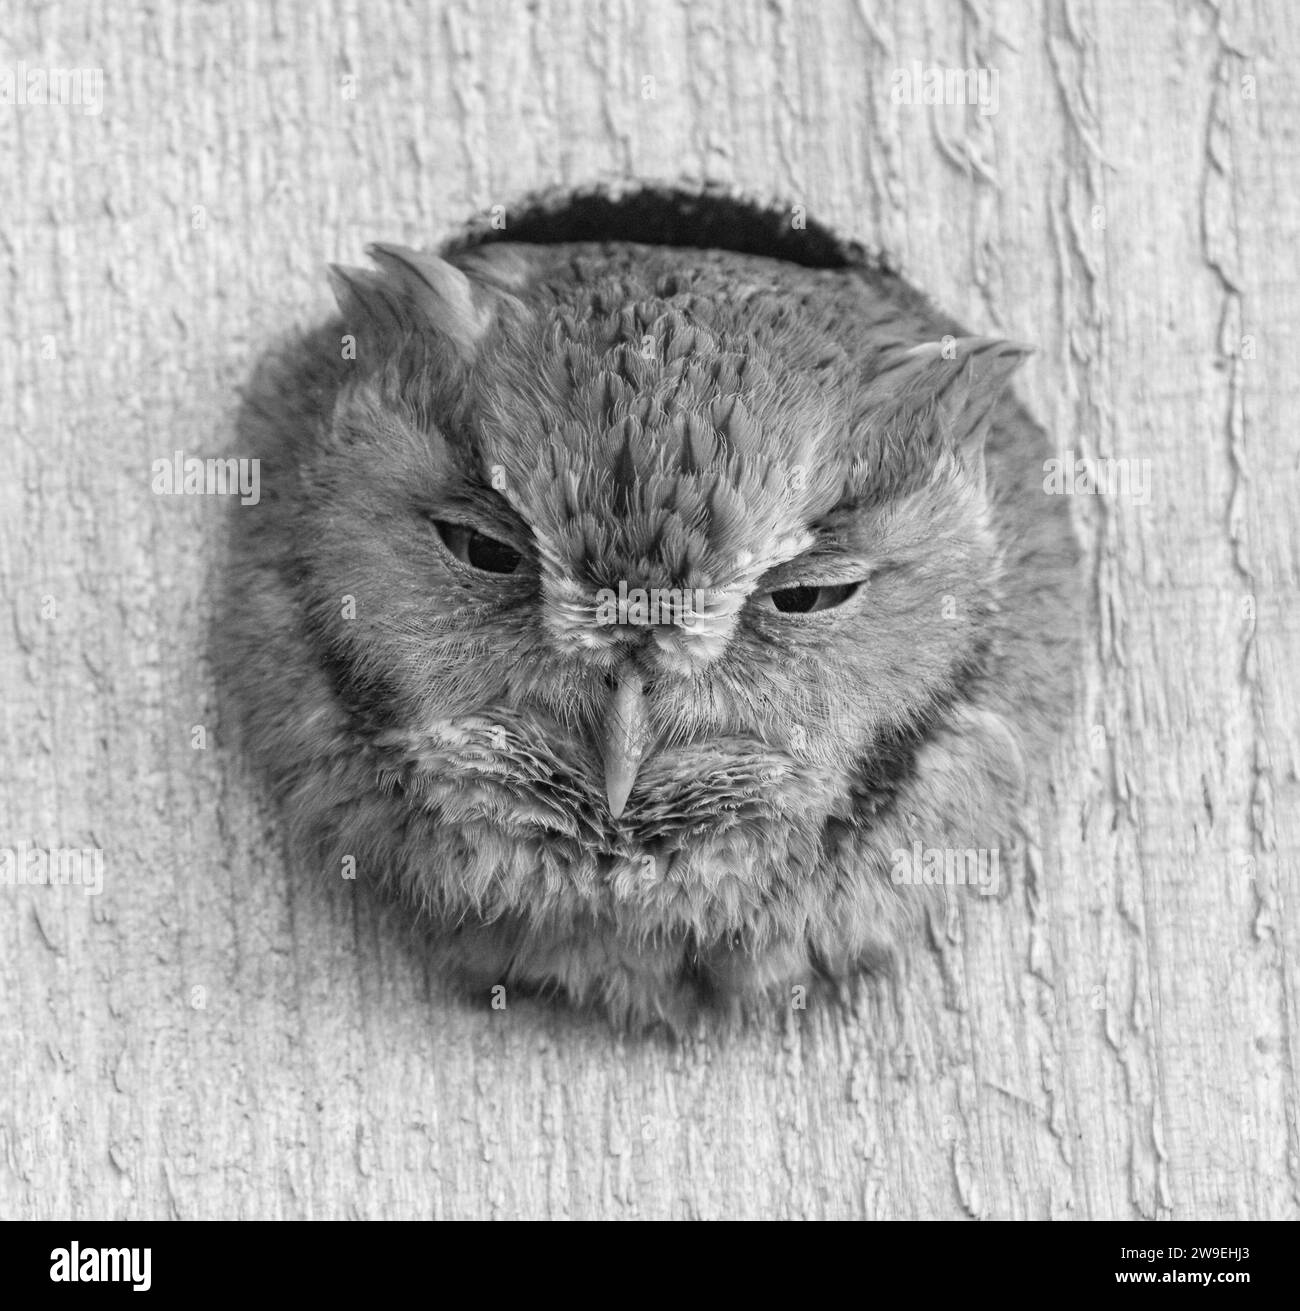 östliche Kreiseleule - Megascops asio - in hölzernem Nistkasten mit verschlafenen Augen. Tolle Federdetails und Textur. Entspannter und bequemer, entzückender und Stockfoto